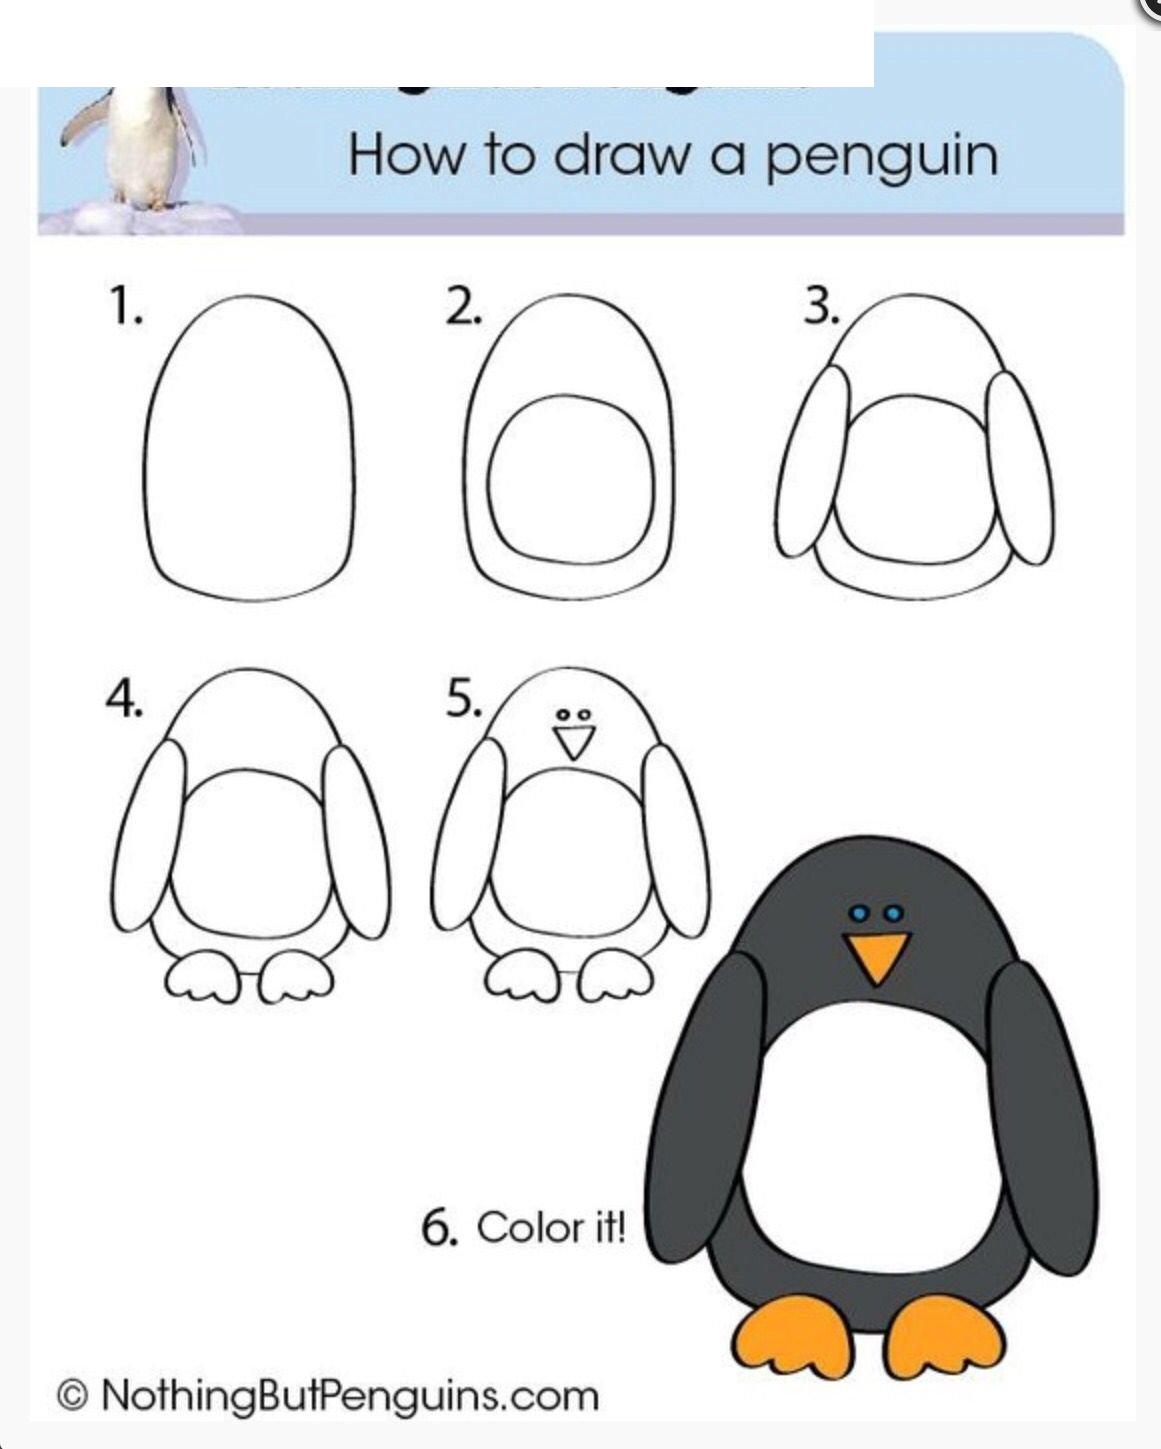 Πώς να σχεδιάσετε έναν πιγκουίνο - οδηγίες βήμα προς βήμα για παιδιά